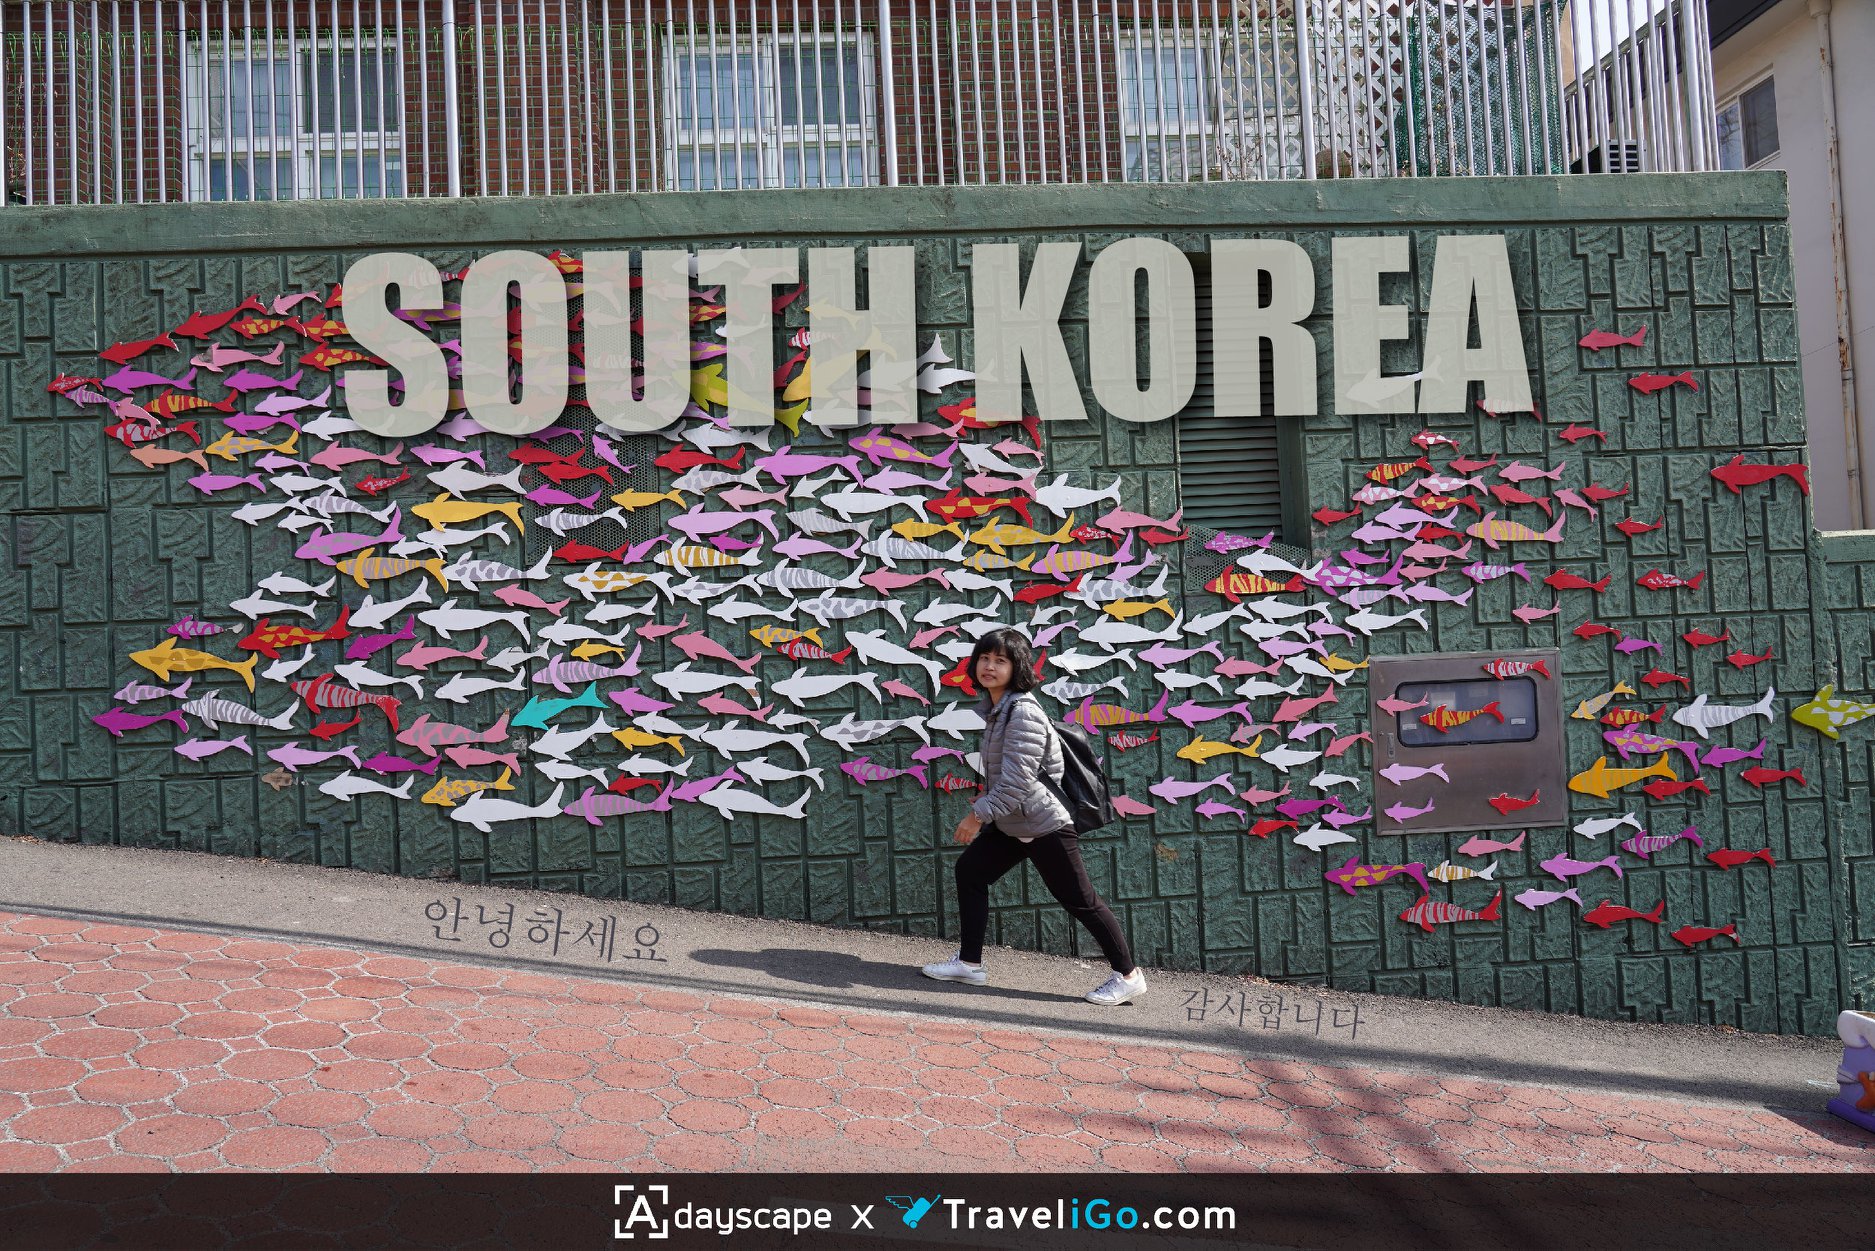 ทัวร์เกาหลี มีดีอะไร หลากหลายเหตุผล ว่าทำไมต้องไปกับทัวร์?